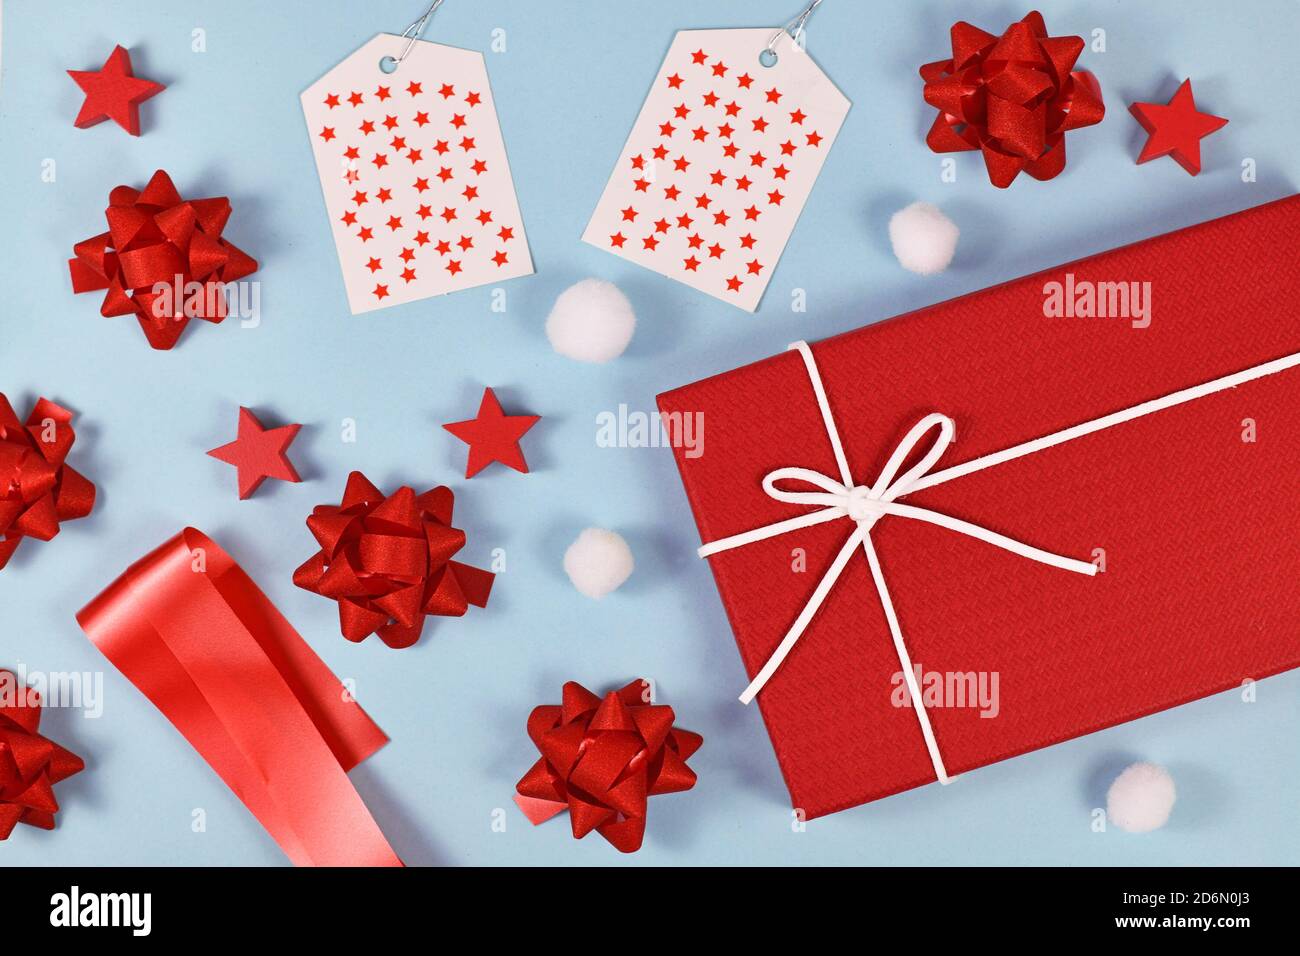 Regalo di Natale con confezione regalo rossa, nastri, etichette regalo, ornamenti di alberi e palle di neve su sfondo azzurro Foto Stock